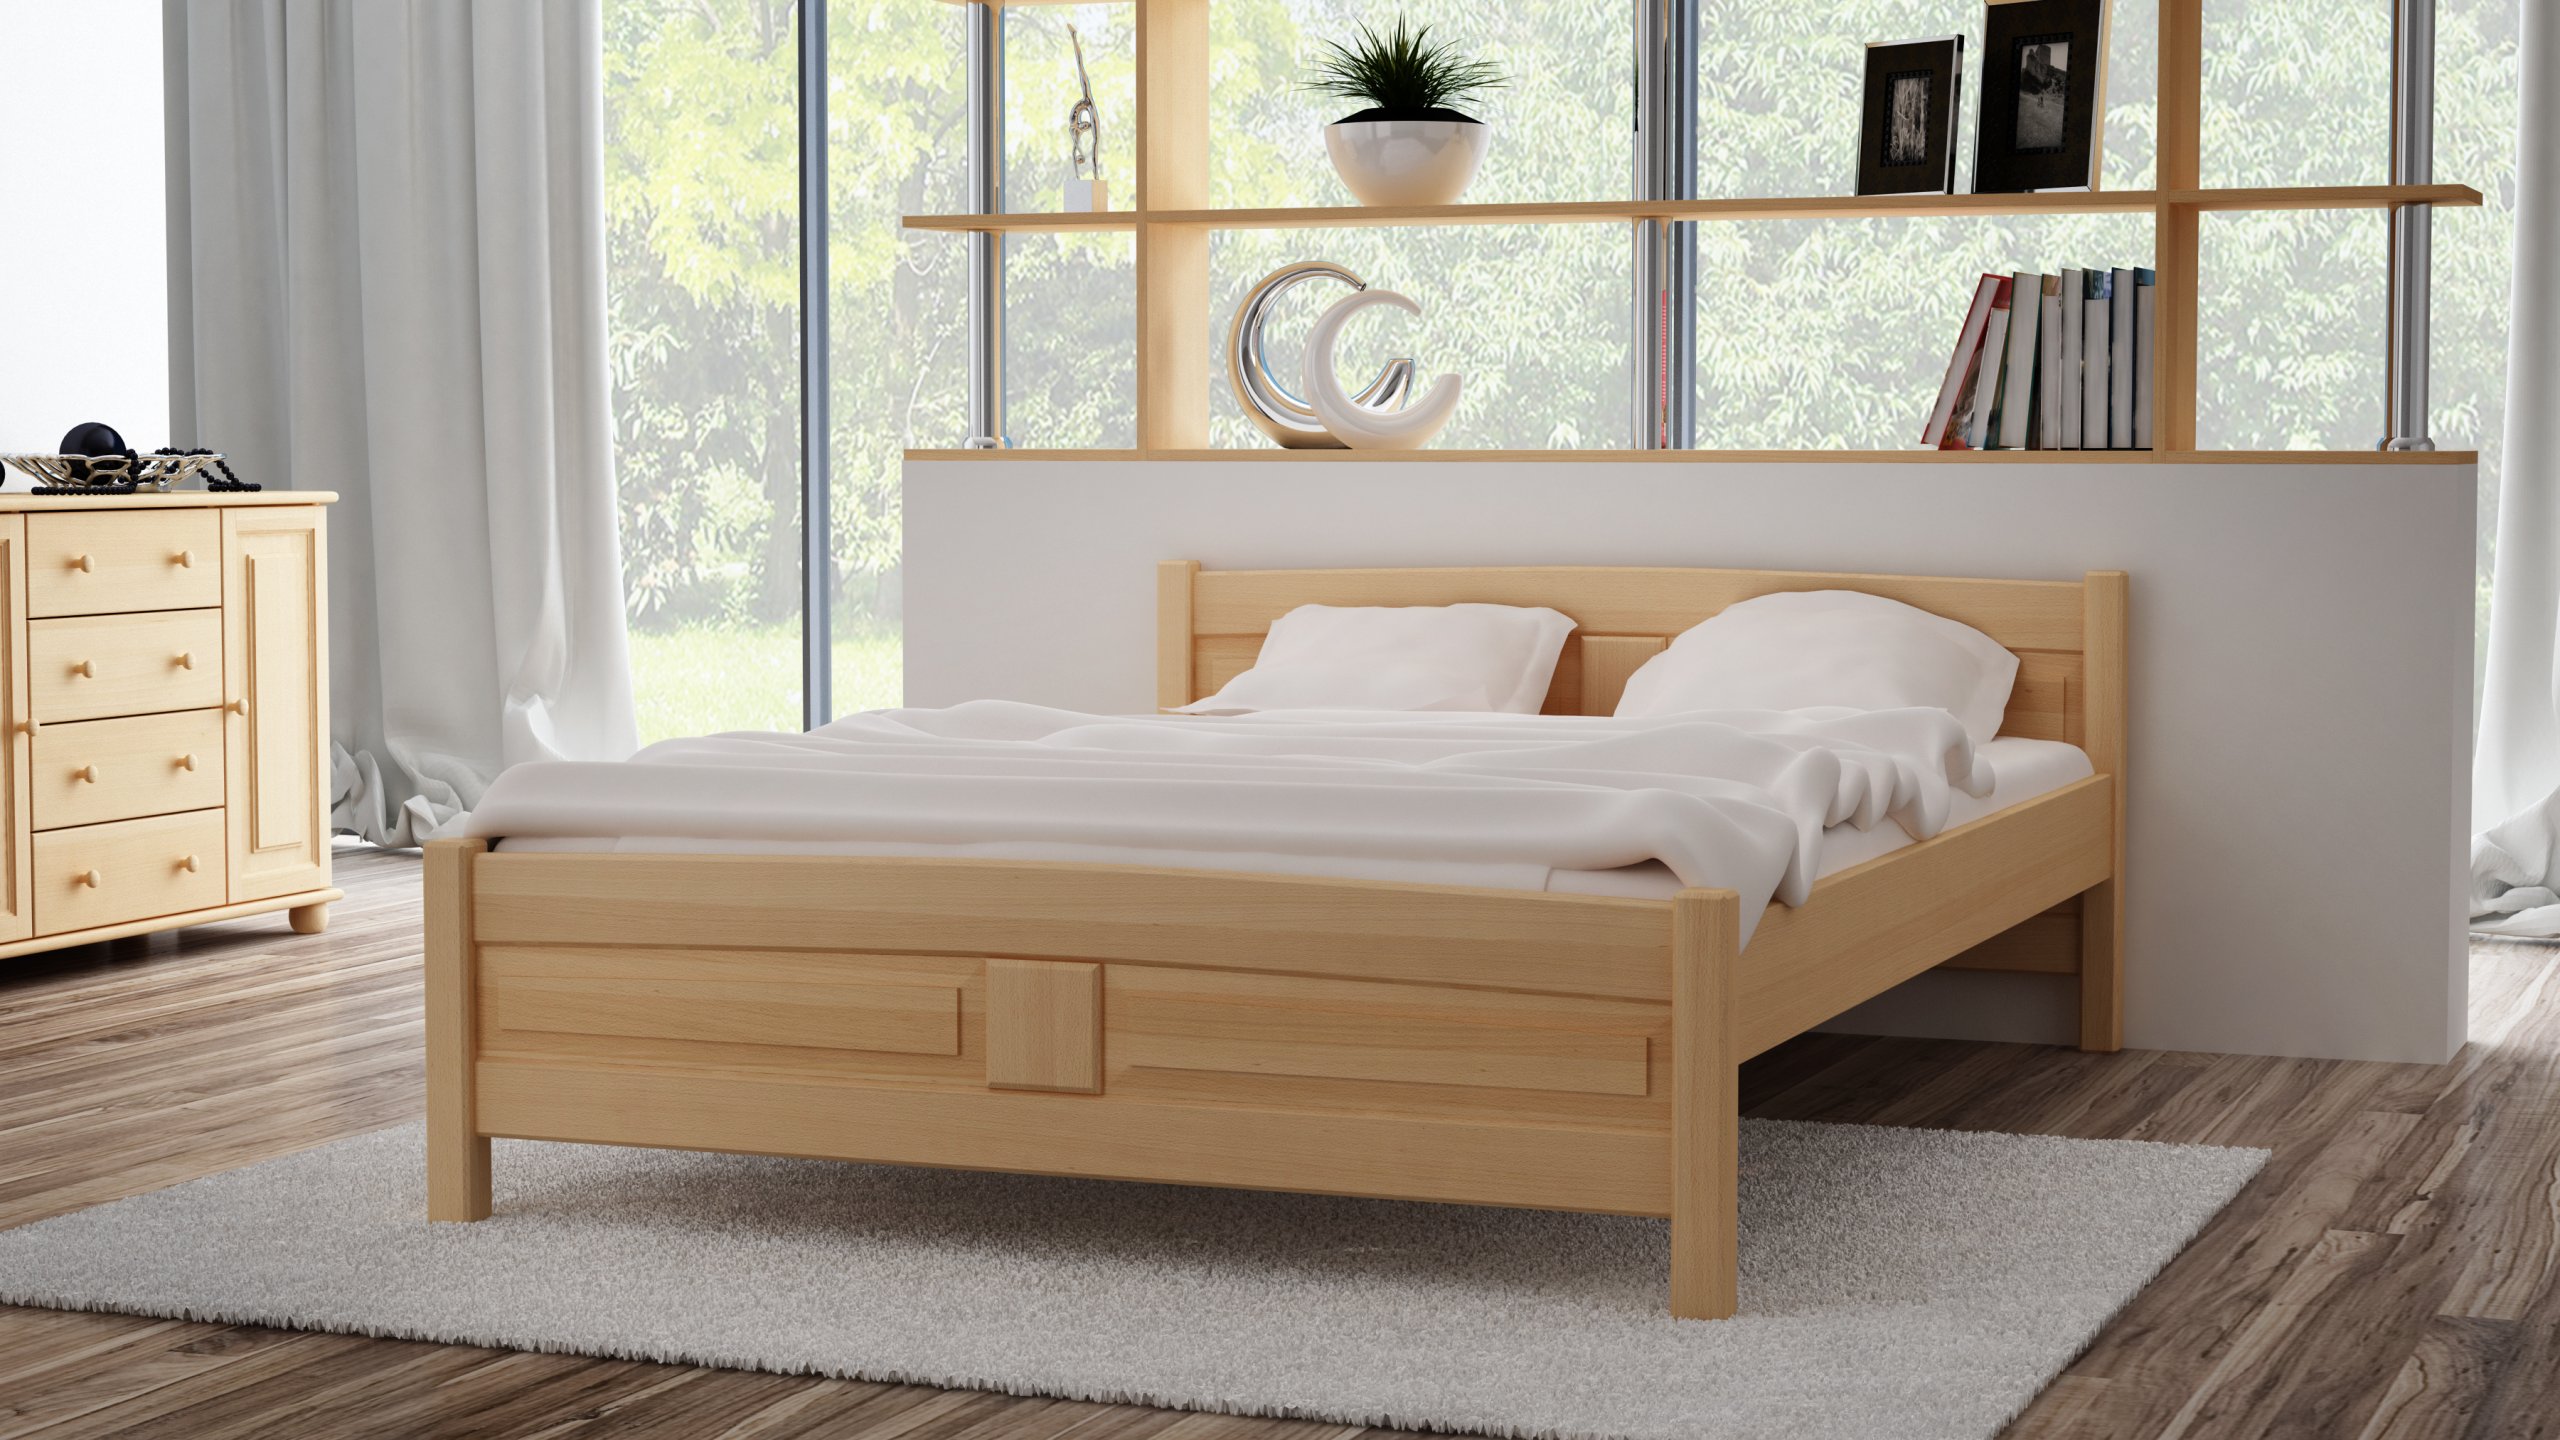 Кровать из массива бука. Кровать деревянная. Кровать дерево. Кровать двуспальная деревянная. Белая деревянная кровать.